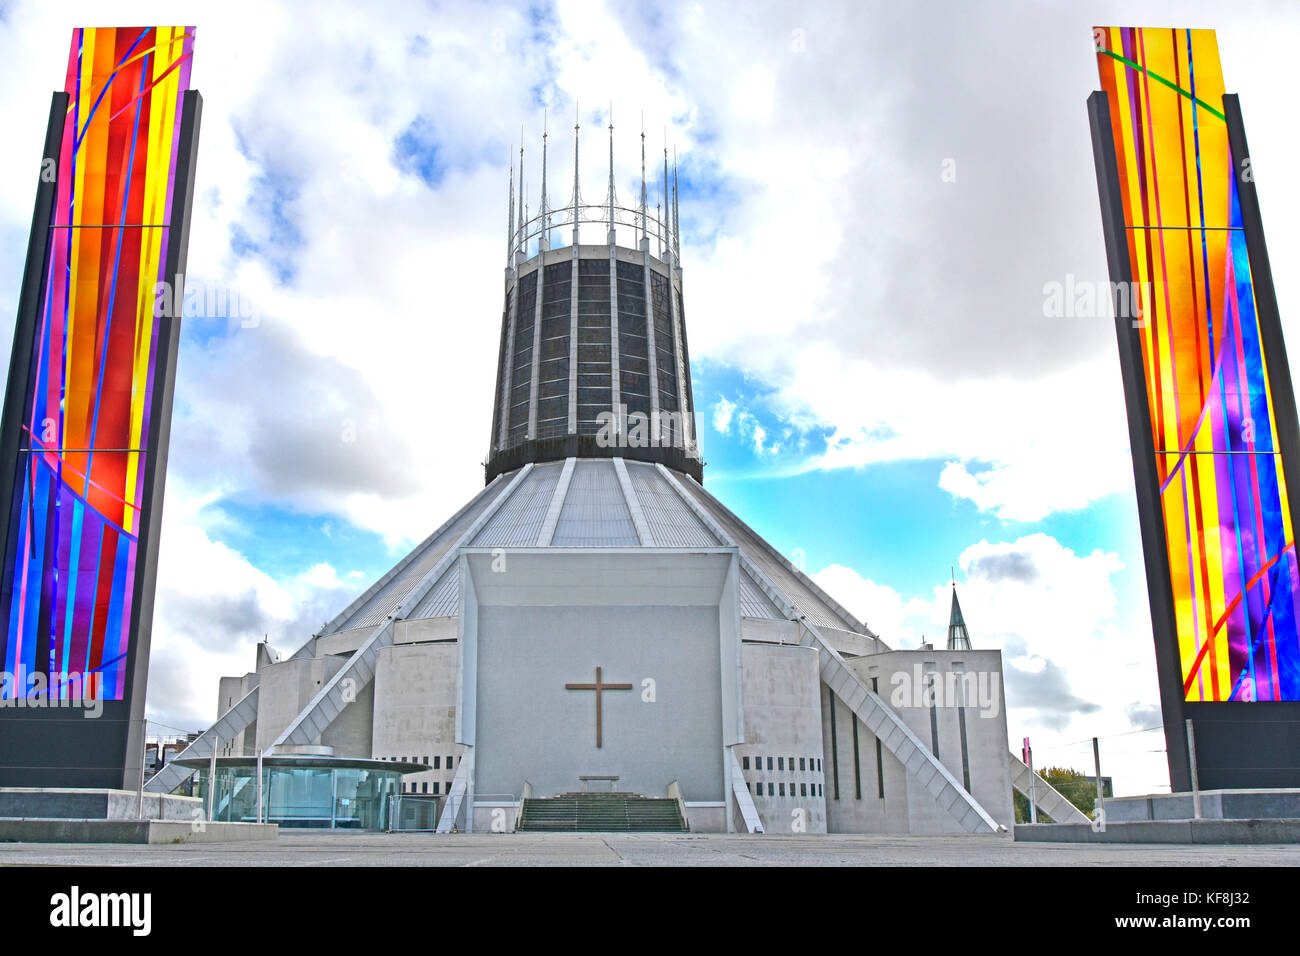 Architecture et design modernes de la cathédrale catholique de Liverpool Extérieur de l'église flanquée de panneaux de vitraux Merseyside England UK Banque D'Images